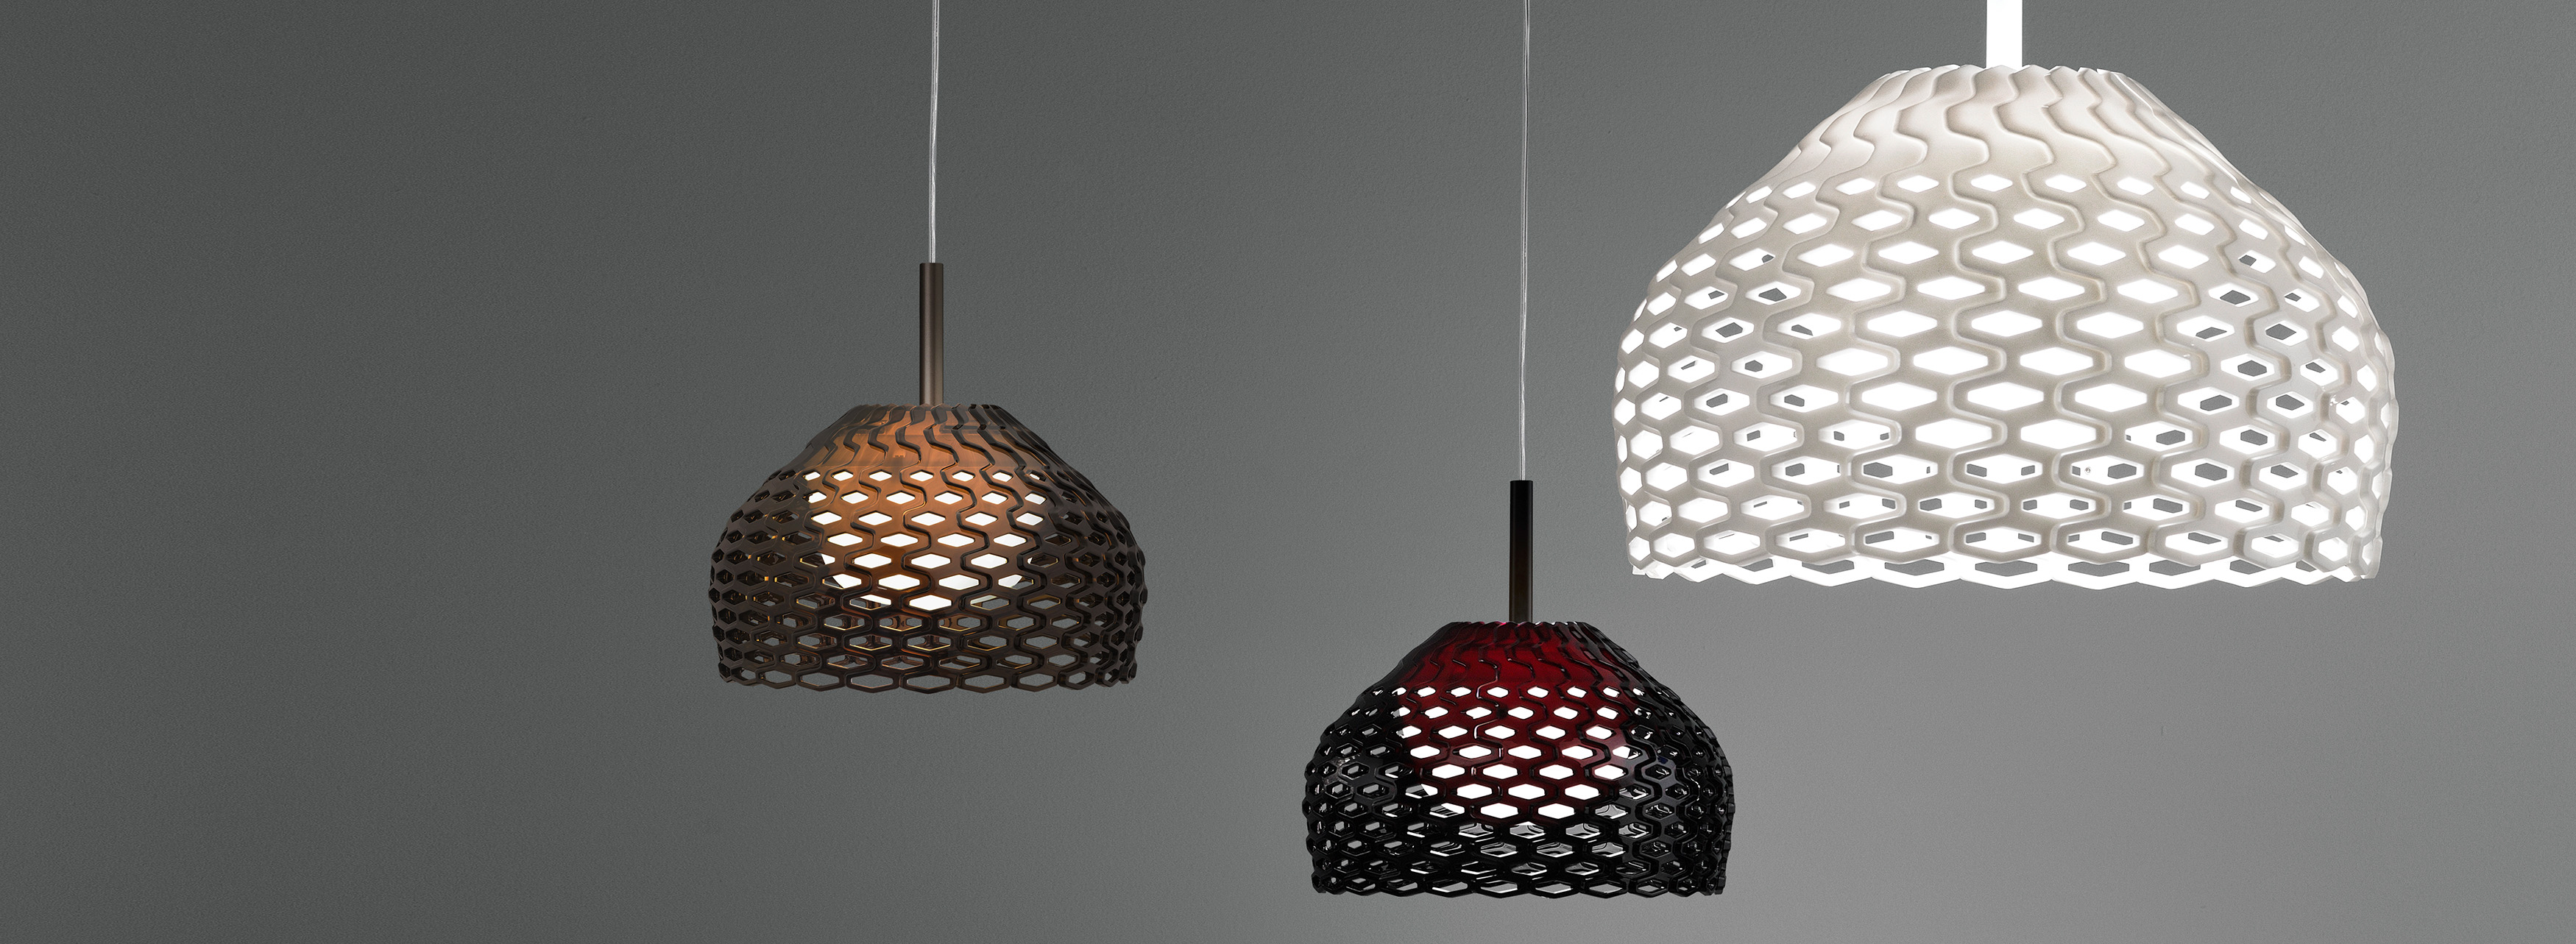 Tatou | Lamps and lighting fixtures | Flos